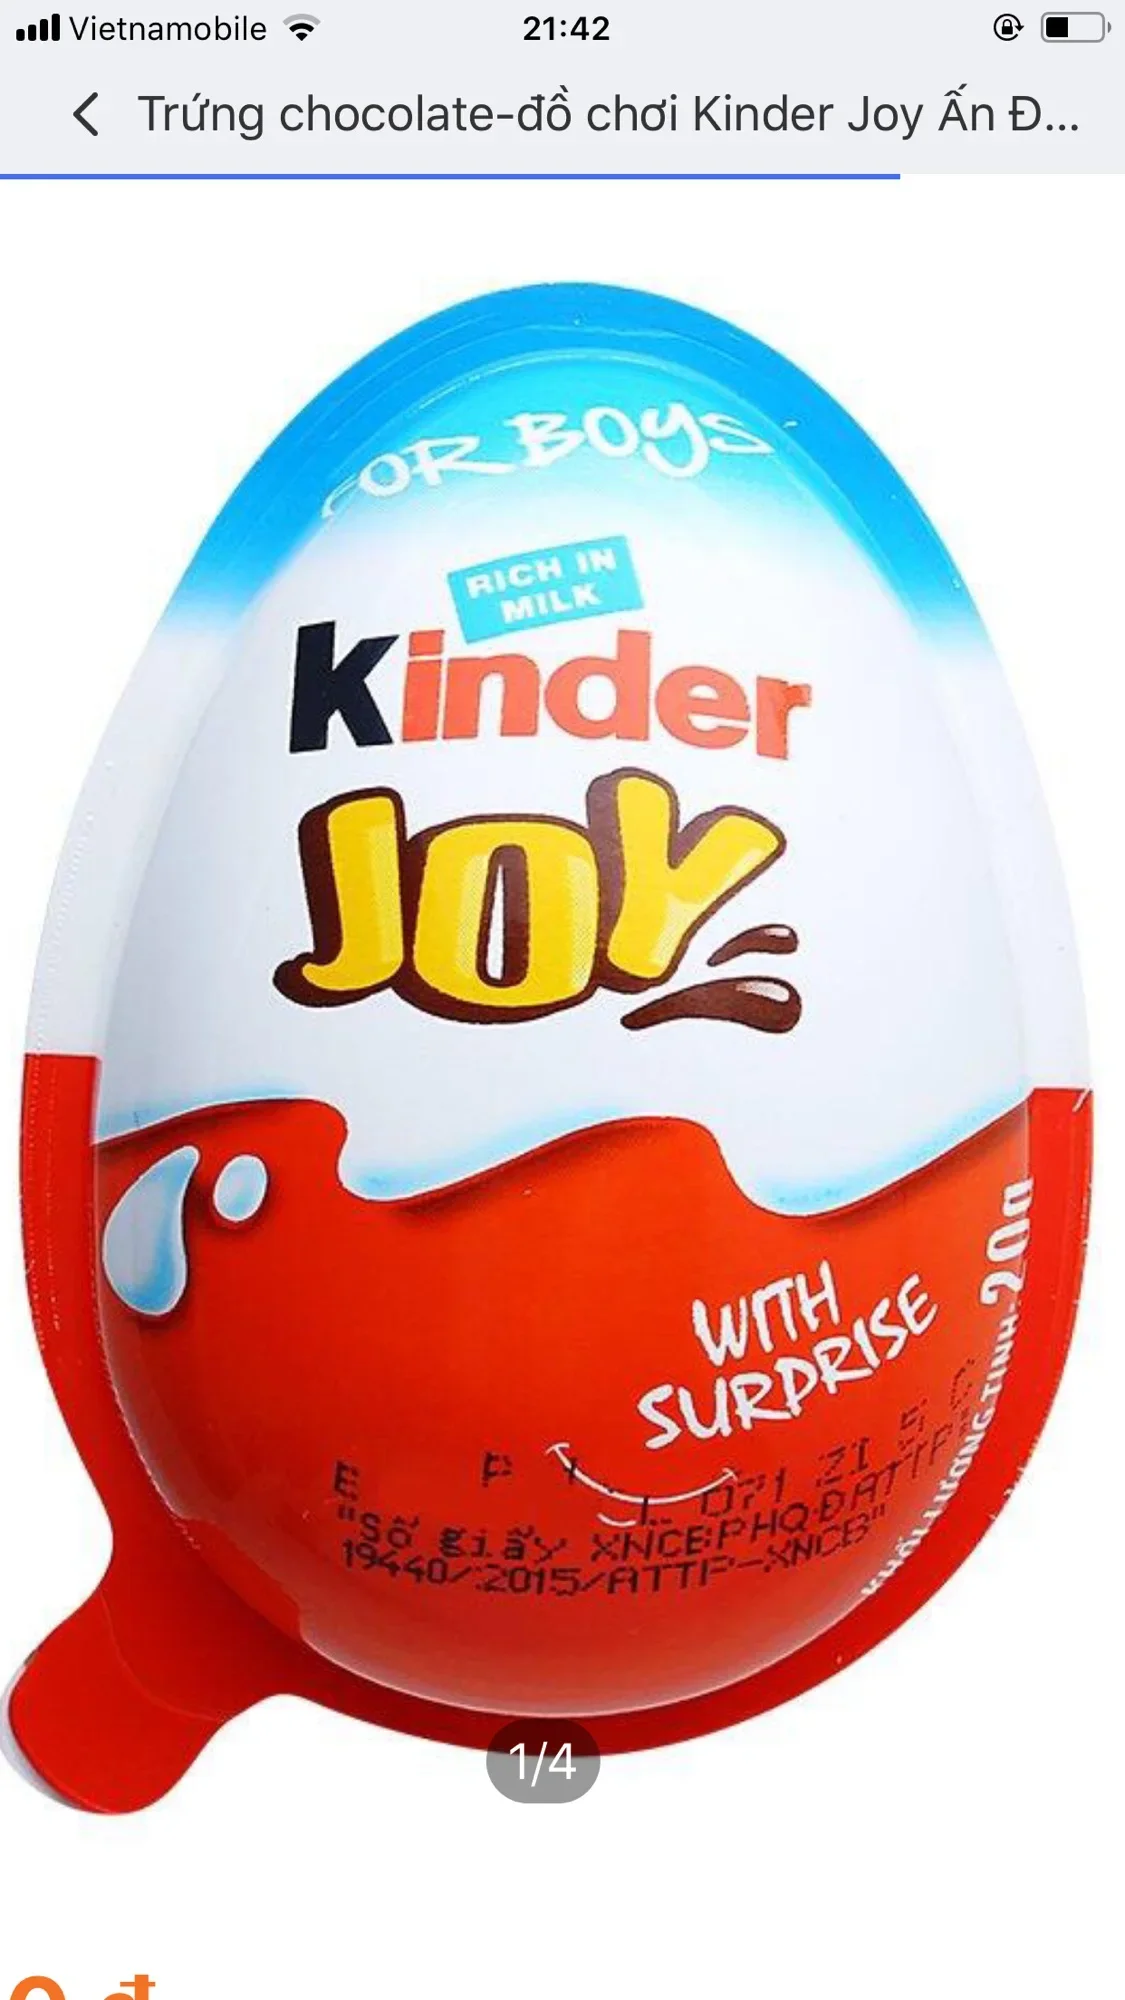 Trứng chocolate-đồ chơi Kinder Joy Ấn Độ, hộp 24 quả